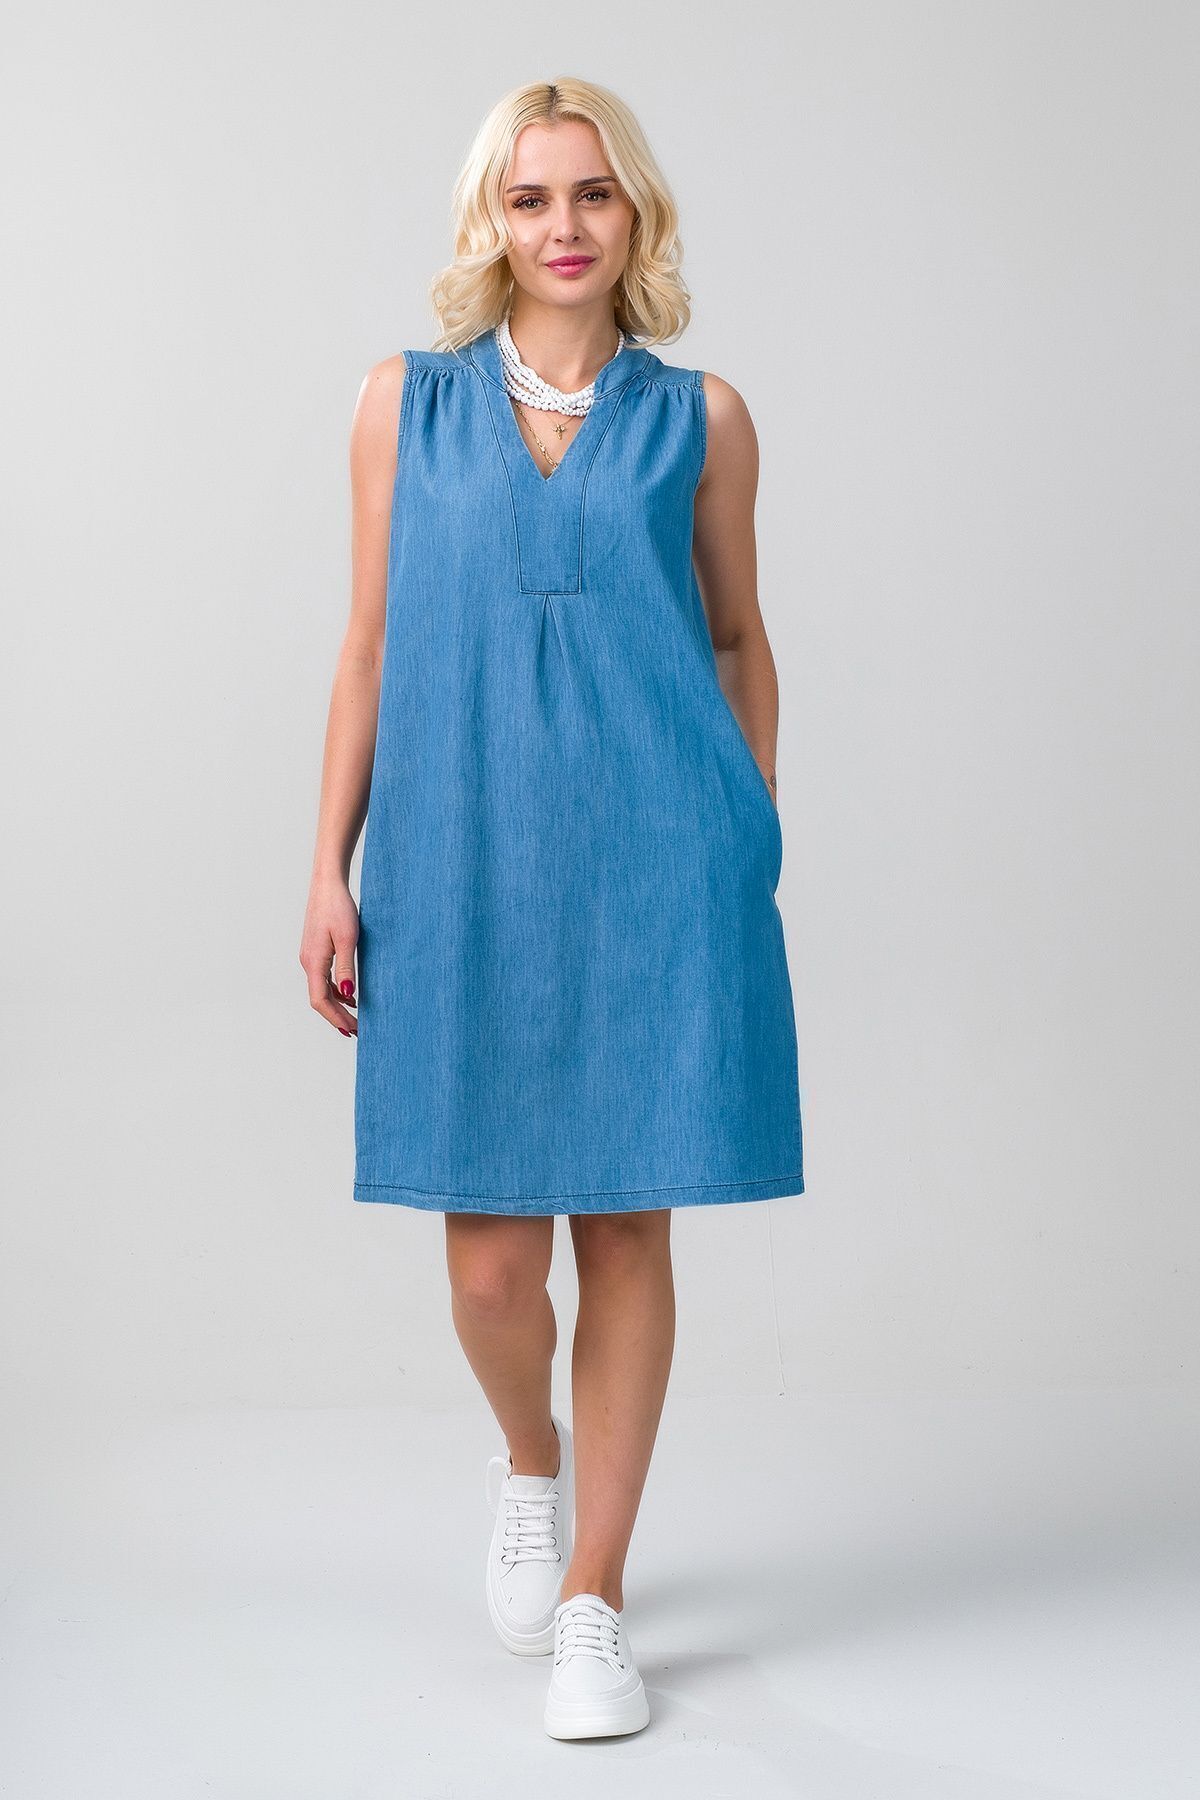 Bold & Young Kadın İnce Kot Kumaşı Cepli Yıkanmış Pamuklu Açık Mavi Kot Elbise